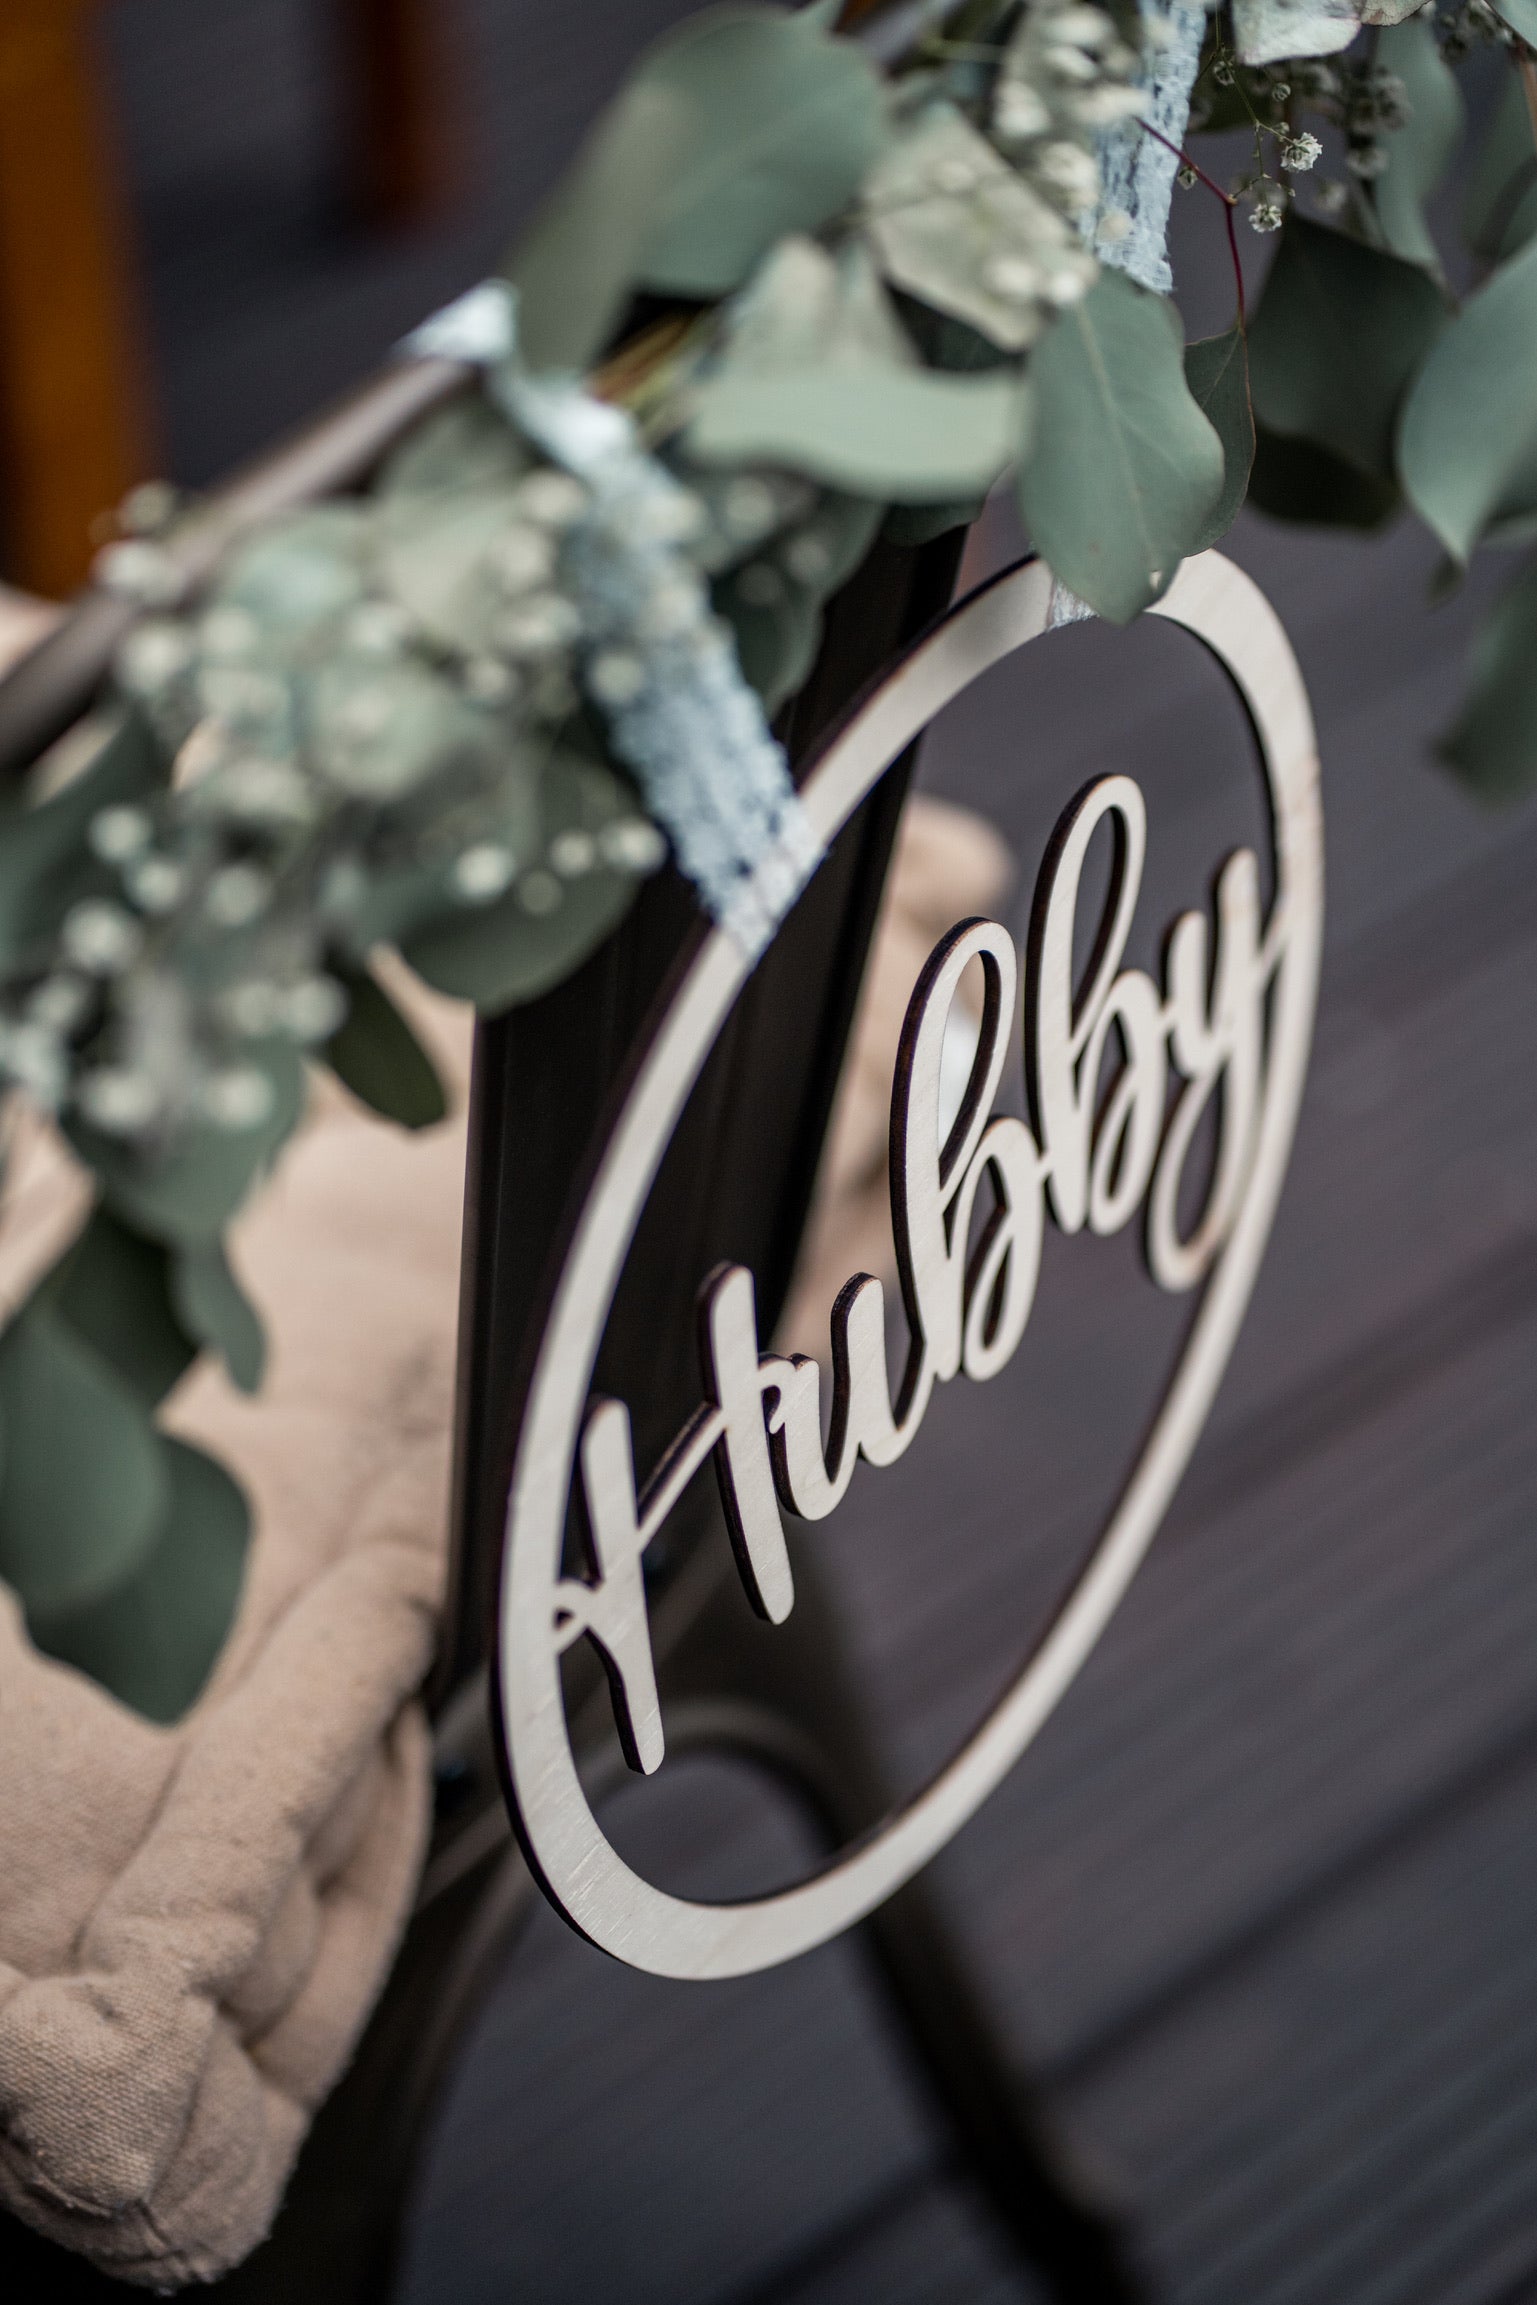 "Hubby" & "Wifey" Hochzeitsstuhl-Schilder für Braut und Bräutigam